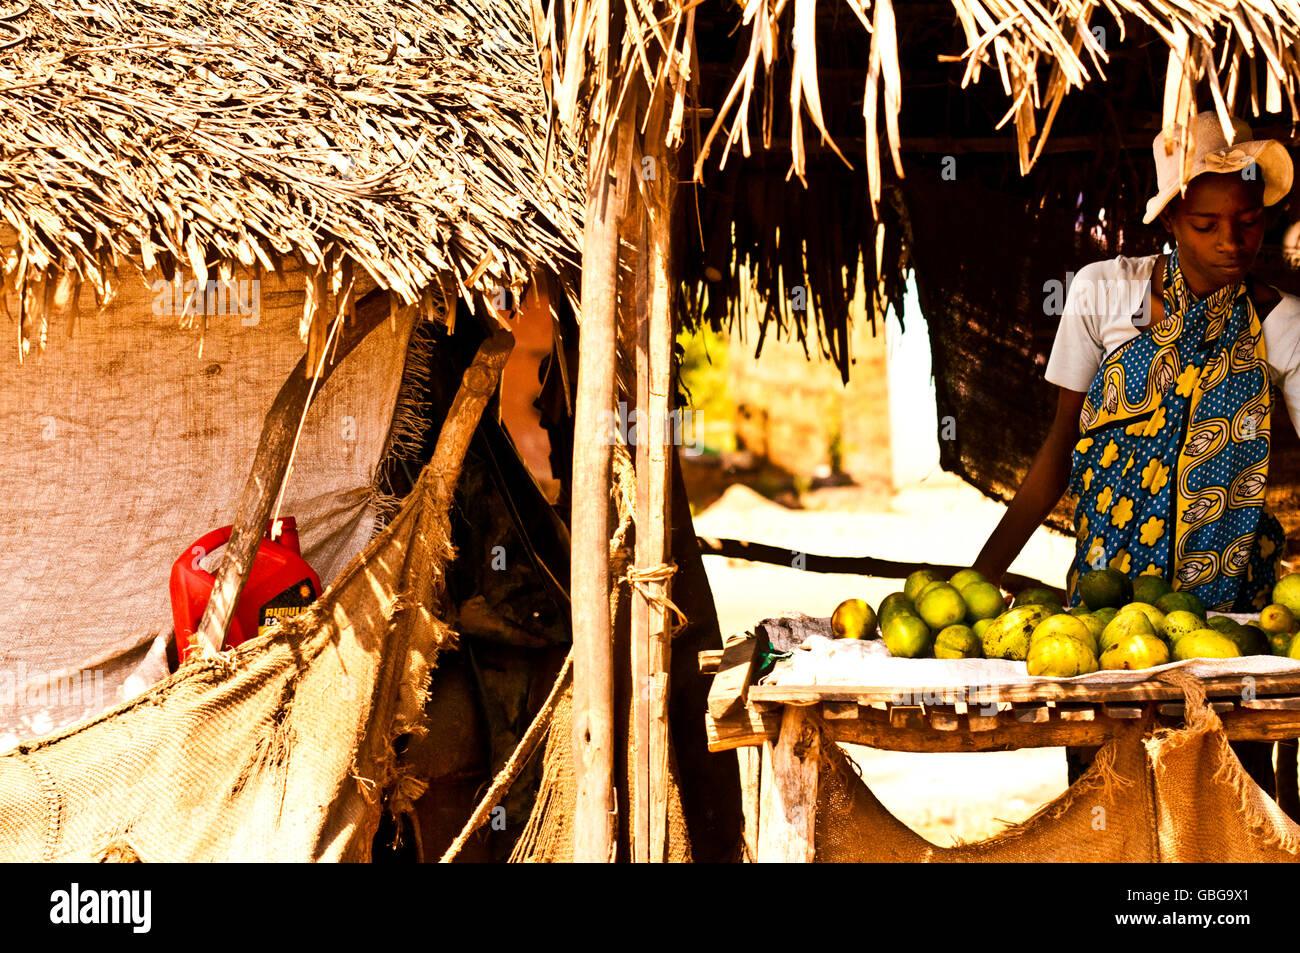 MASAI MARA, KENIA. 18. Dezember 2011: Kenianische Frau verkaufen Obst an ihrem Stand auf einem Markt in Mombasa, Kenia. Stockfoto